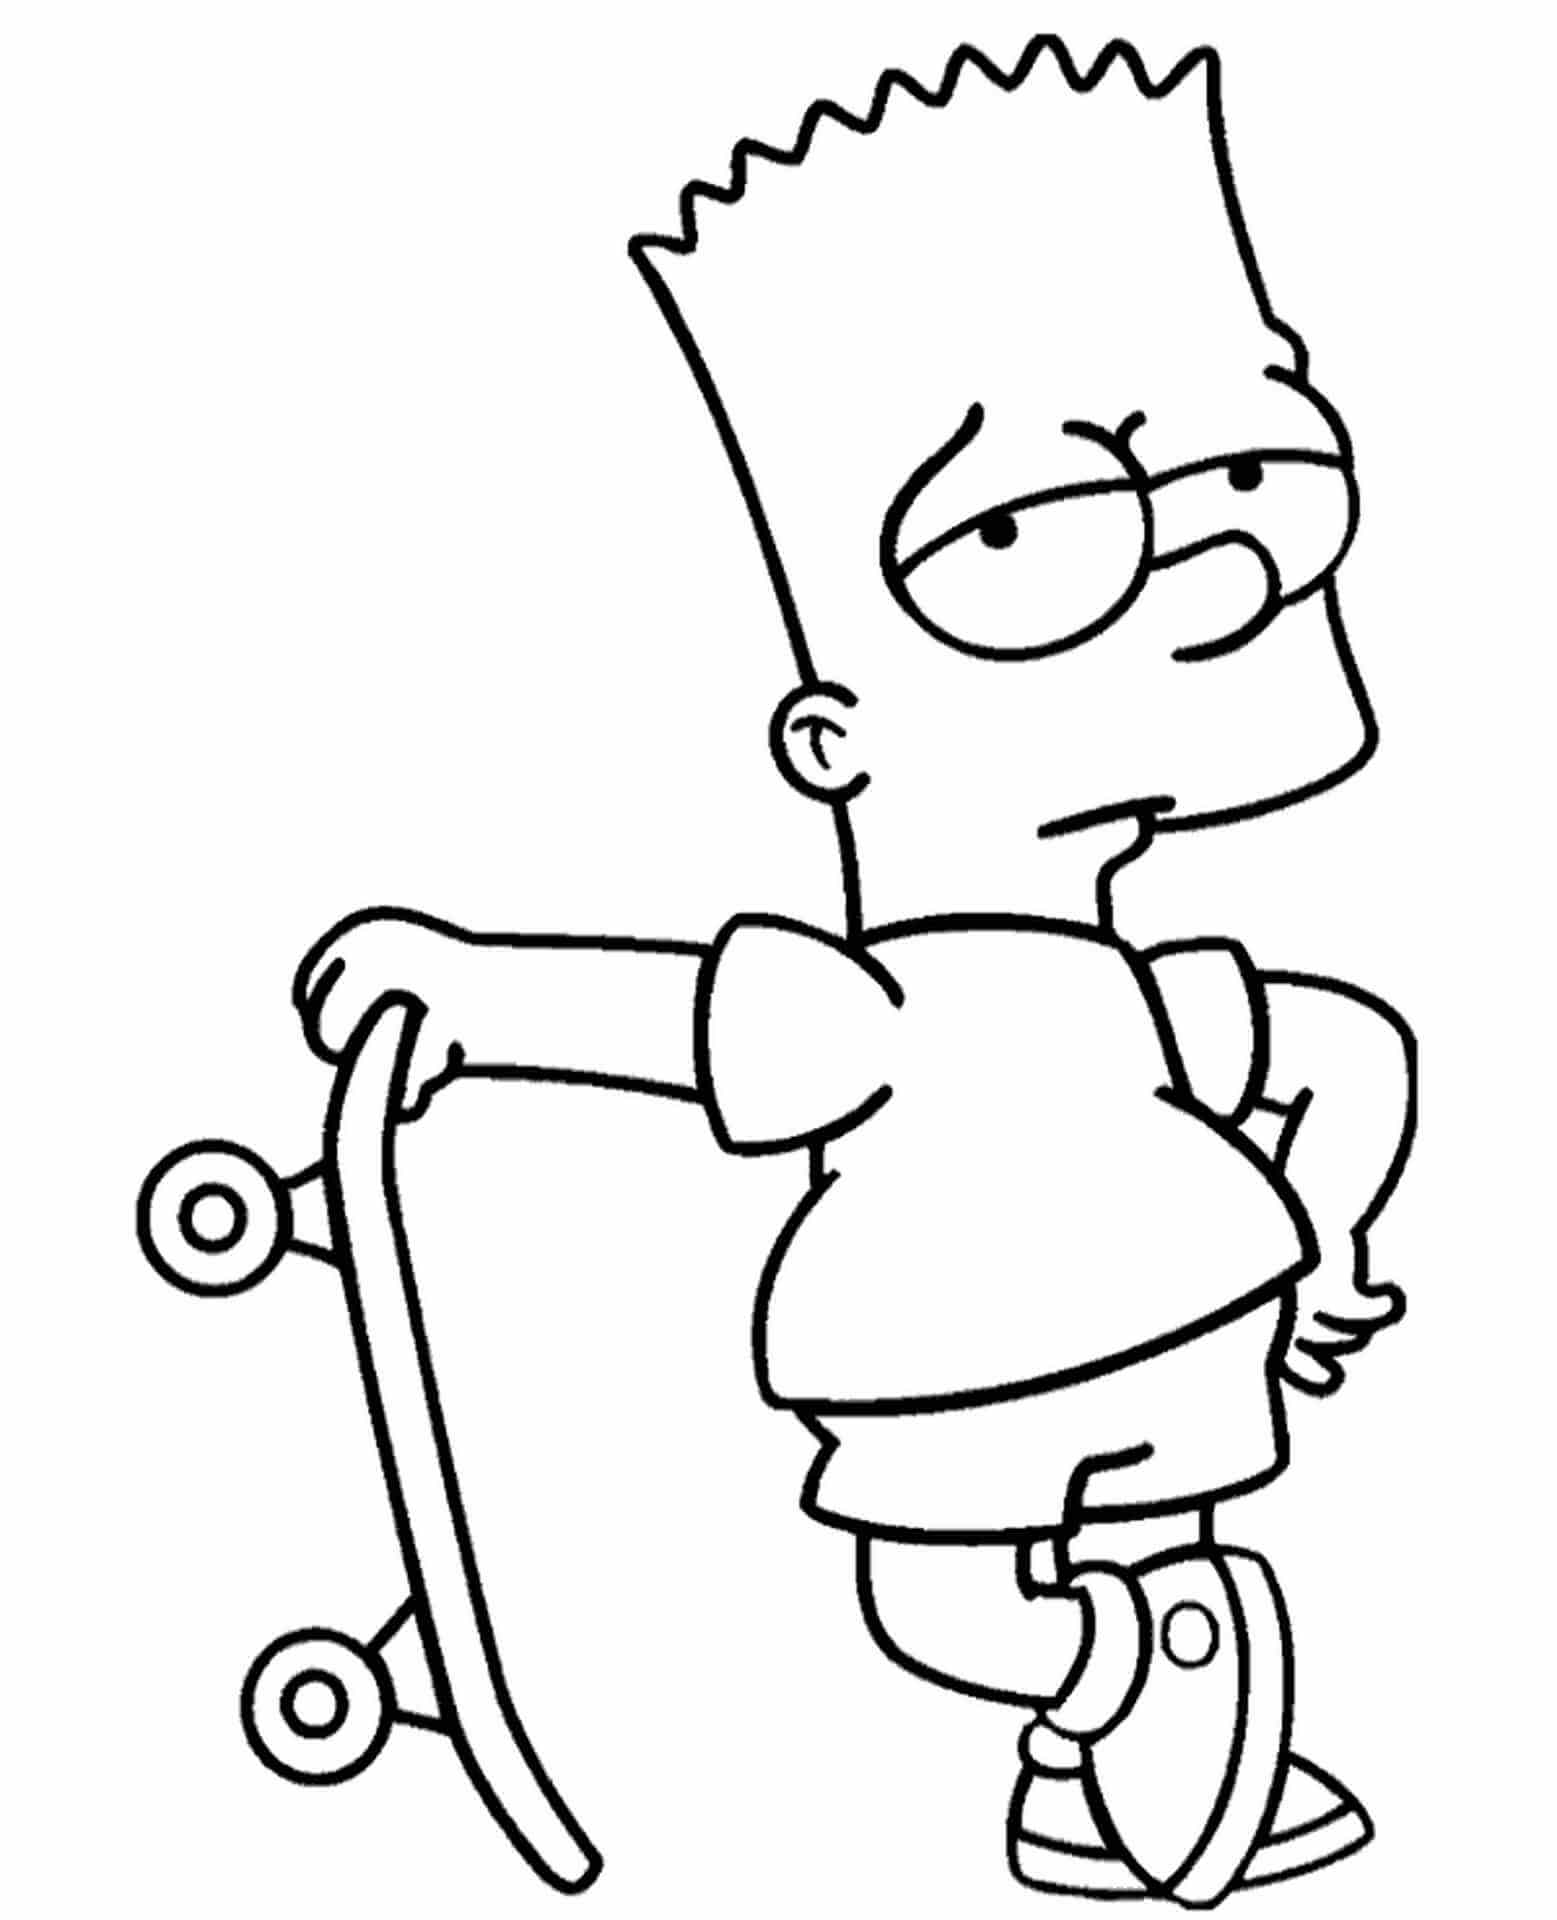 Legal Bart Simpson Segurando um Skate para colorir